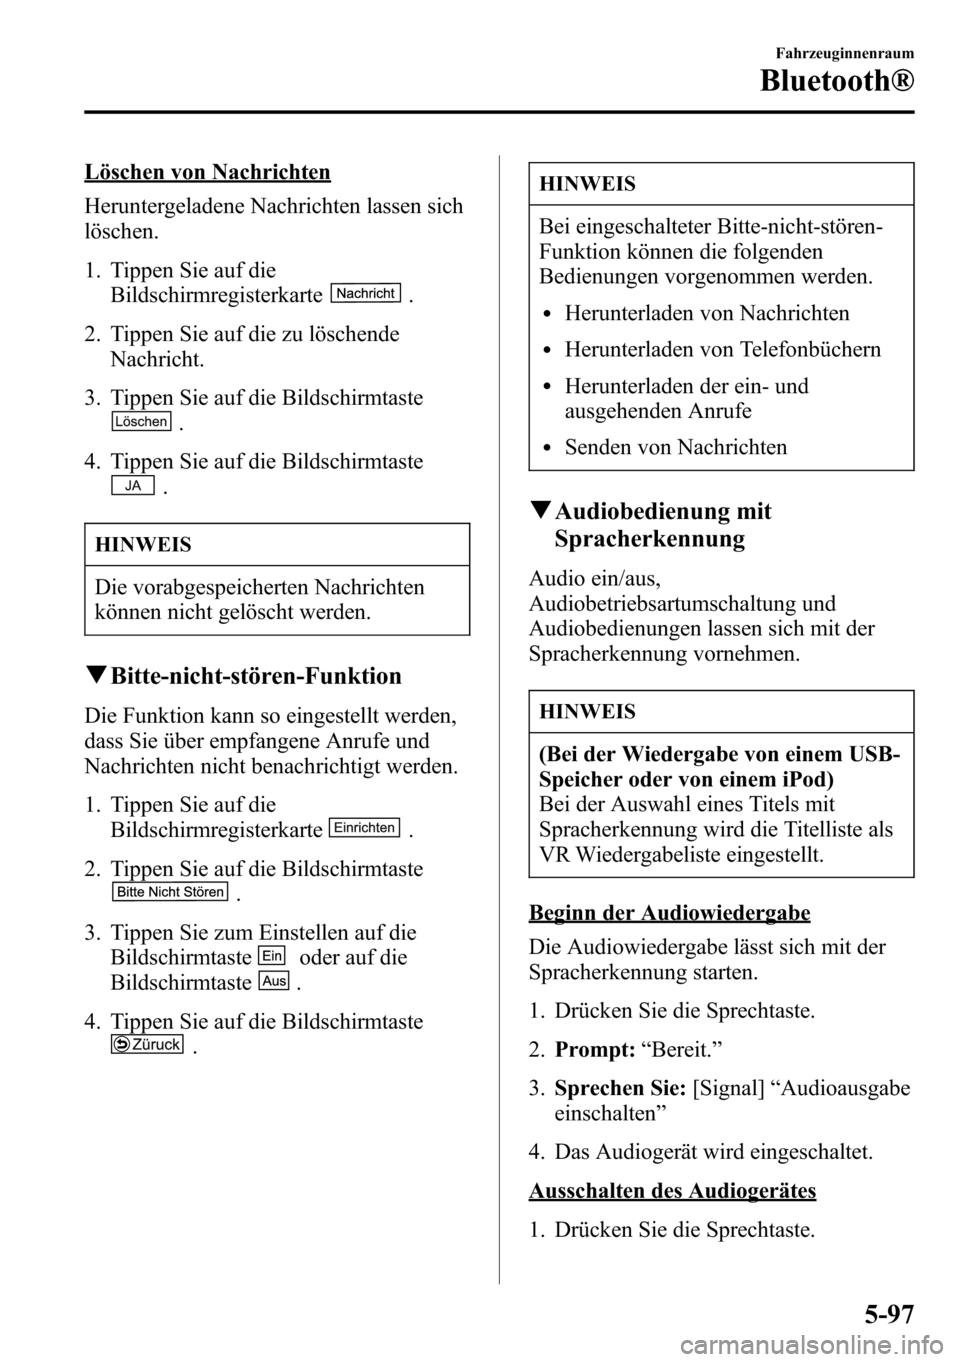 MAZDA MODEL CX-5 2013  Betriebsanleitung (in German) Löschen von Nachrichten
Heruntergeladene Nachrichten lassen sich
löschen.
1. Tippen Sie auf die
Bildschirmregisterkarte
.
2. Tippen Sie auf die zu löschende
Nachricht.
3. Tippen Sie auf die Bildsch